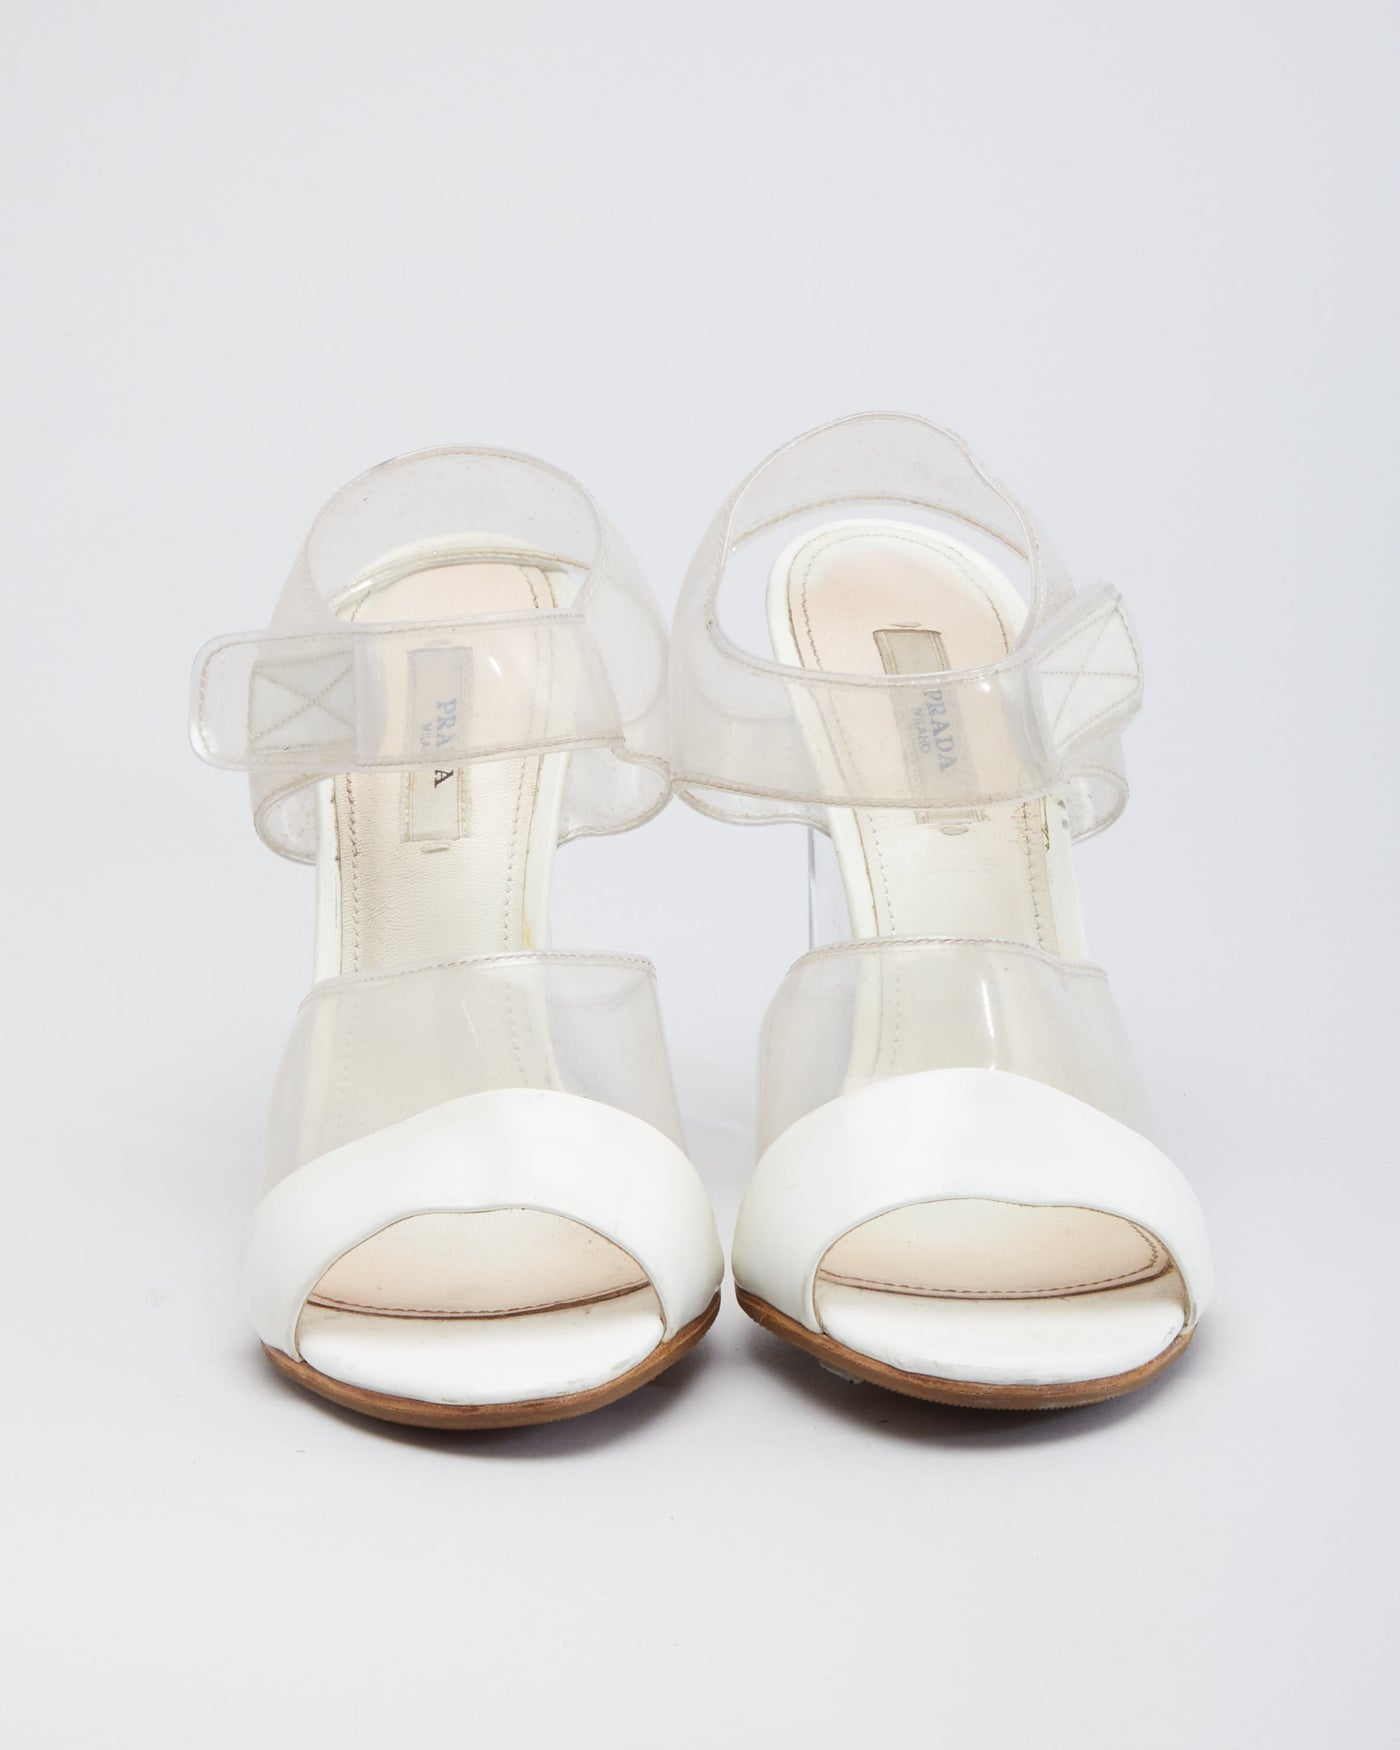 Prada SS 10 Transparent heel Sandal - UK 3.5